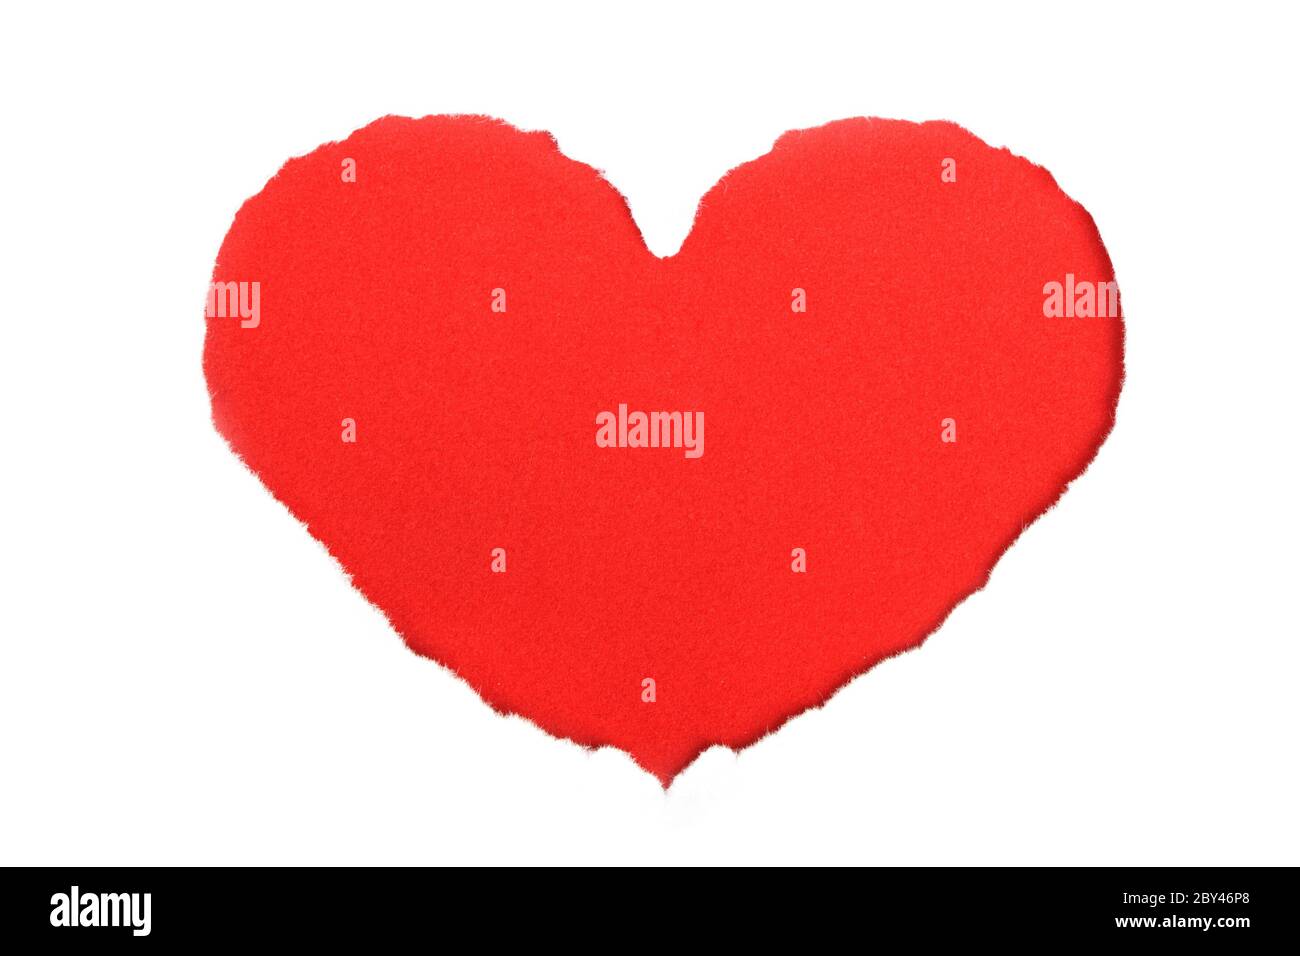 Heart shape symbol Stock Photo